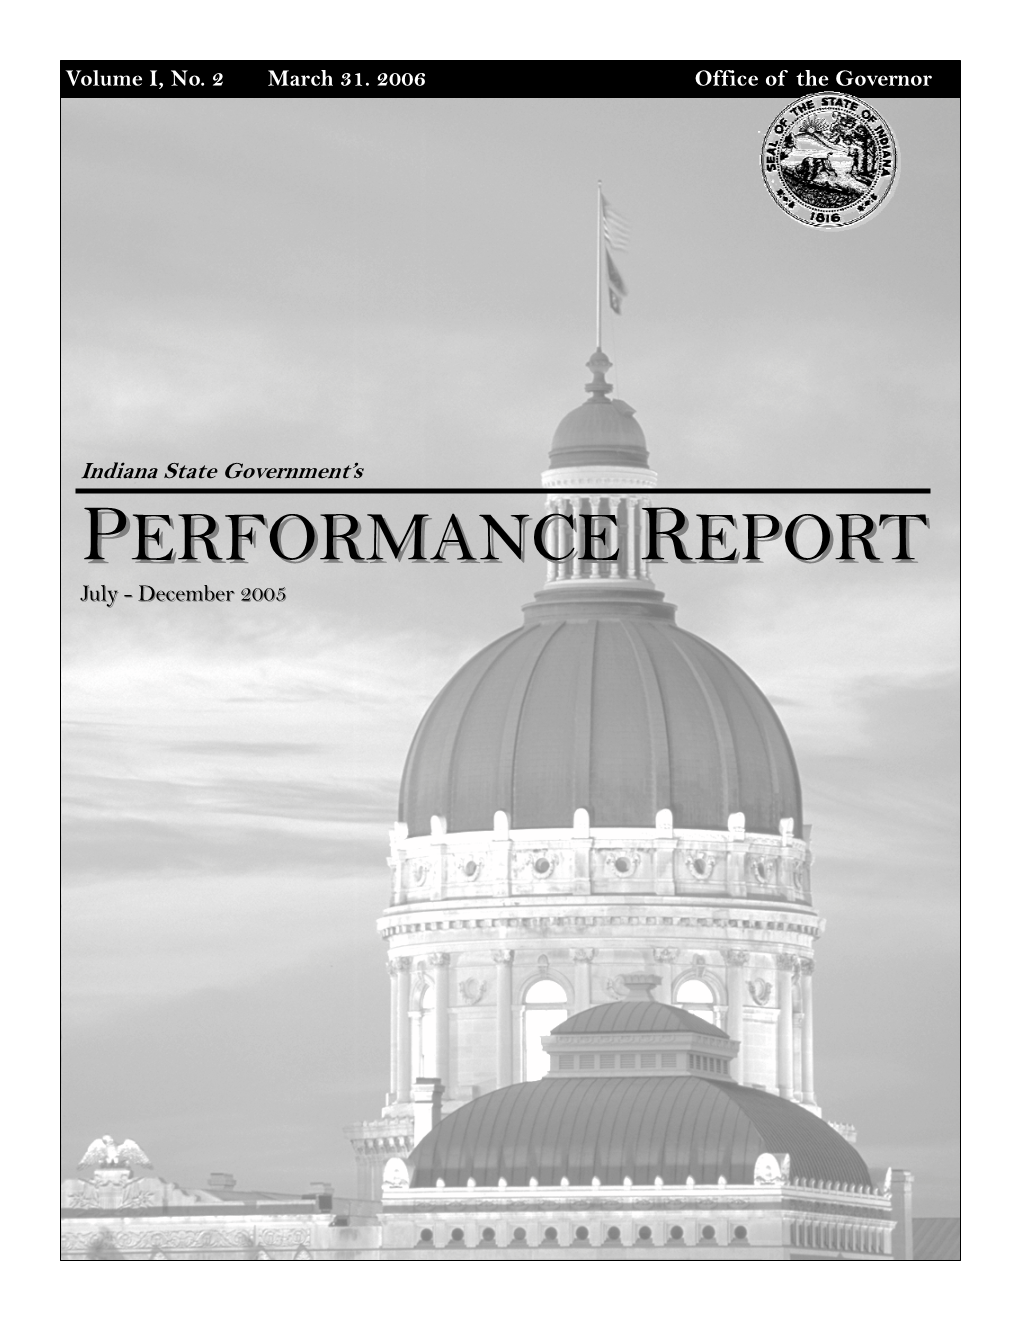 Performance Report 2 (Jul-Dec 2005)